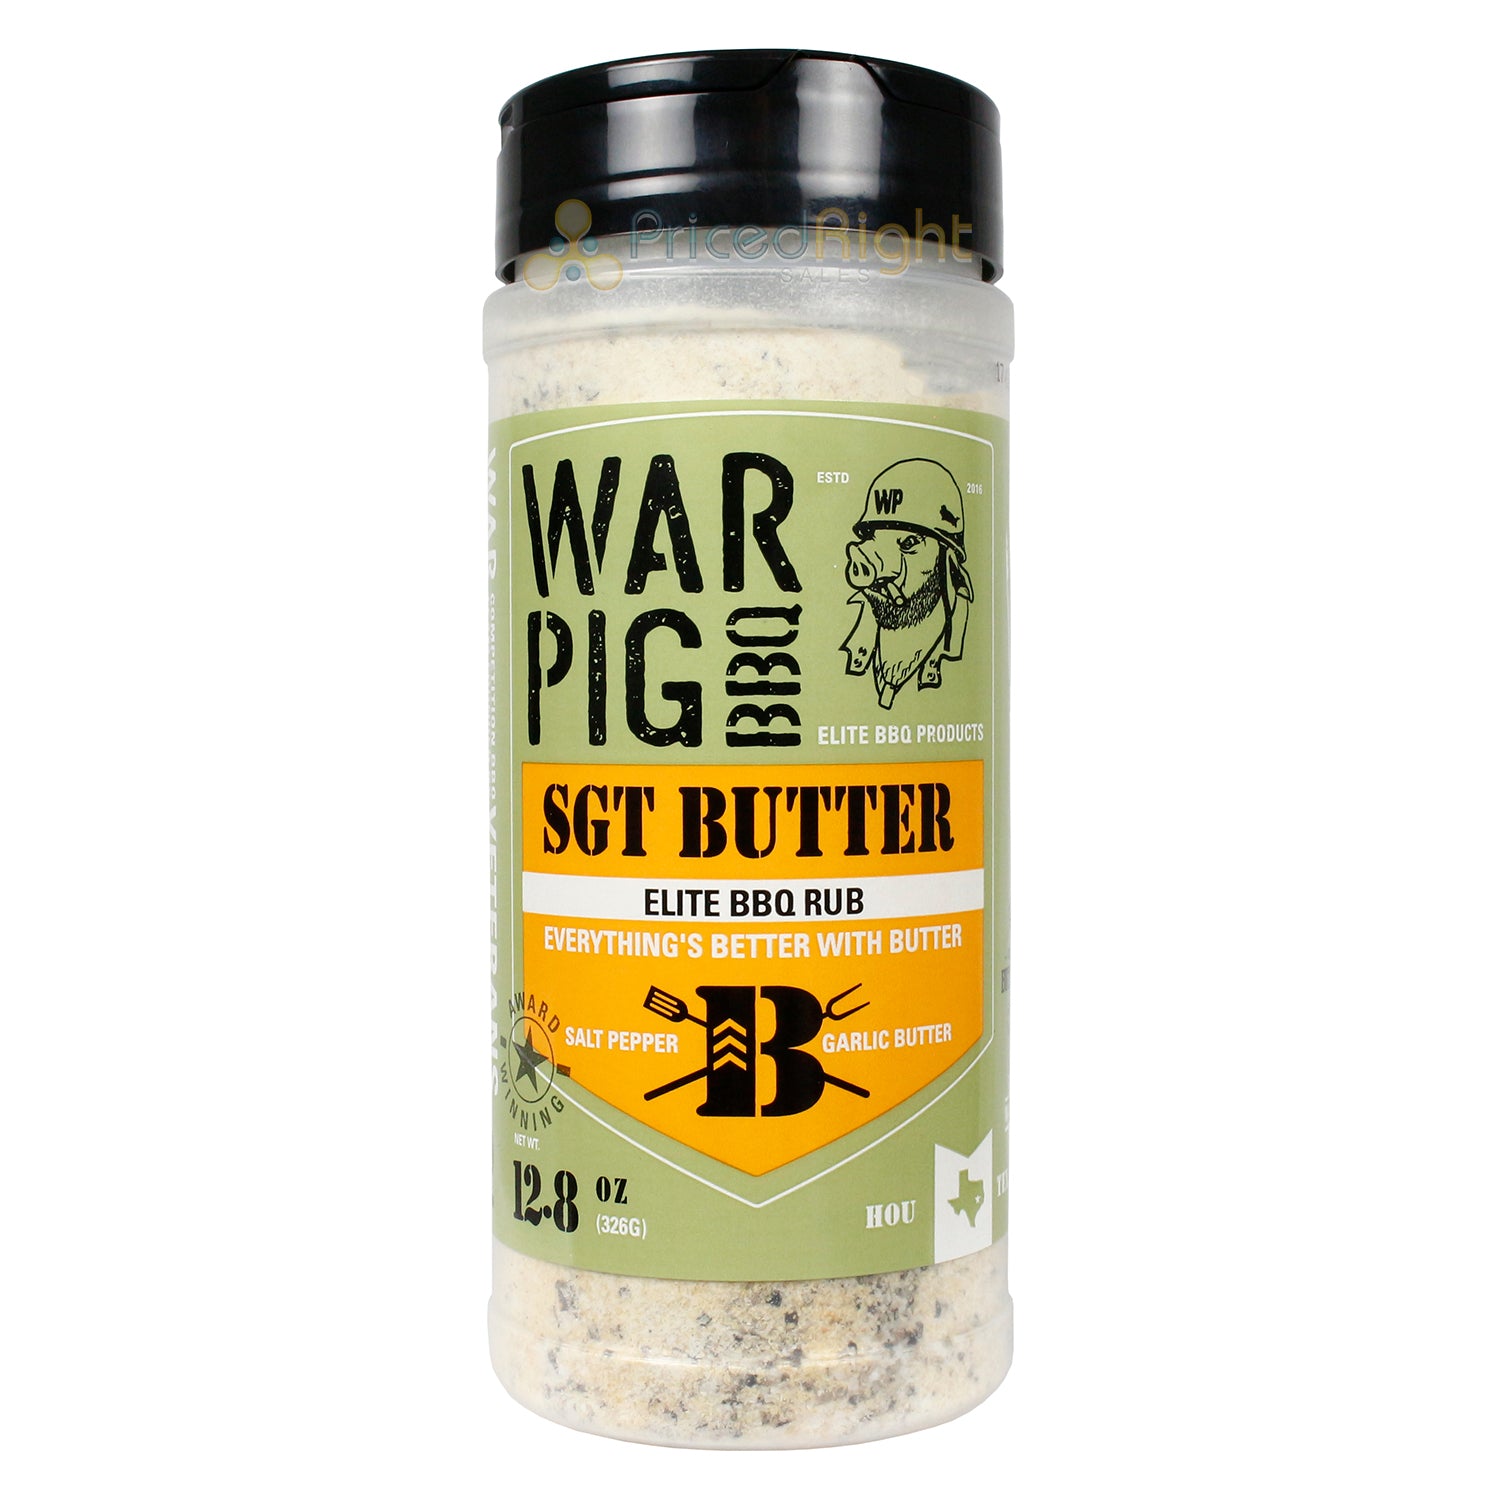 War Pig Sgt Butter Elite BBQ Rub Salt Pepper Garlic Butter Gluten Free 12.8 Oz